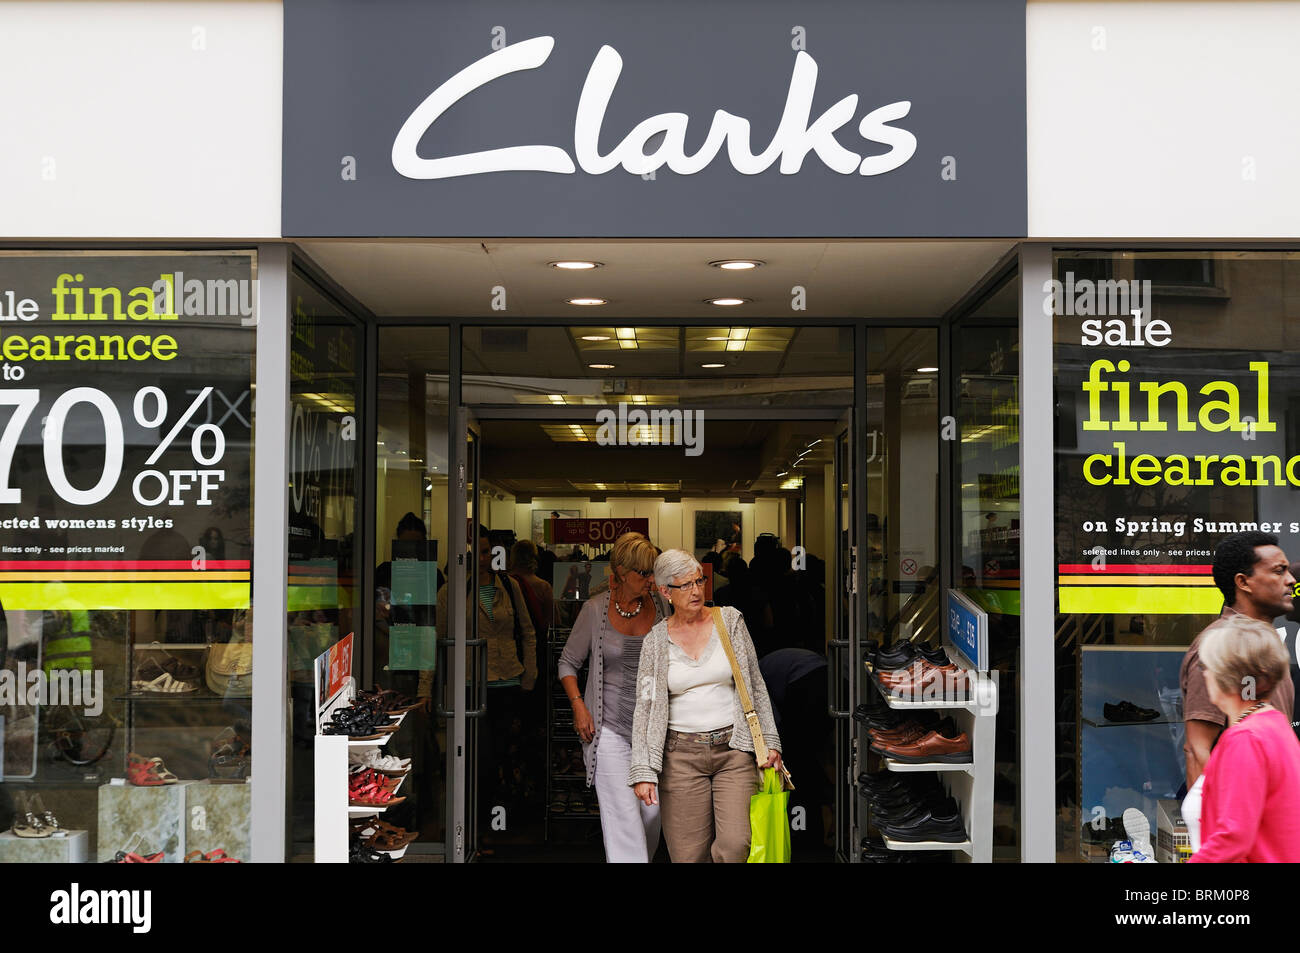 clarks shoe shop london